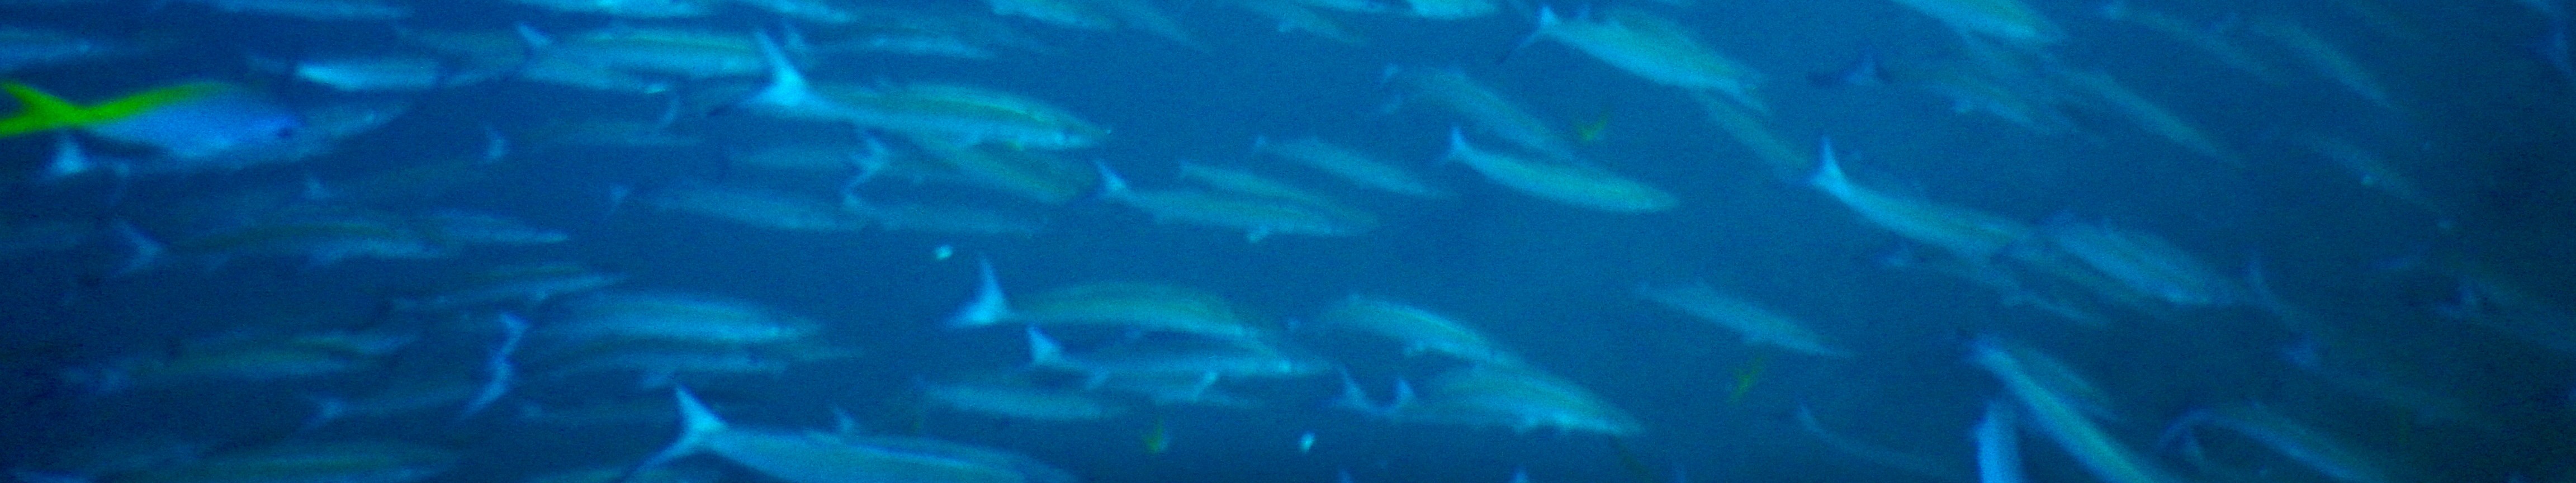 蘇梅島 PADI 五星潛水中心船帆岩潛水之旅